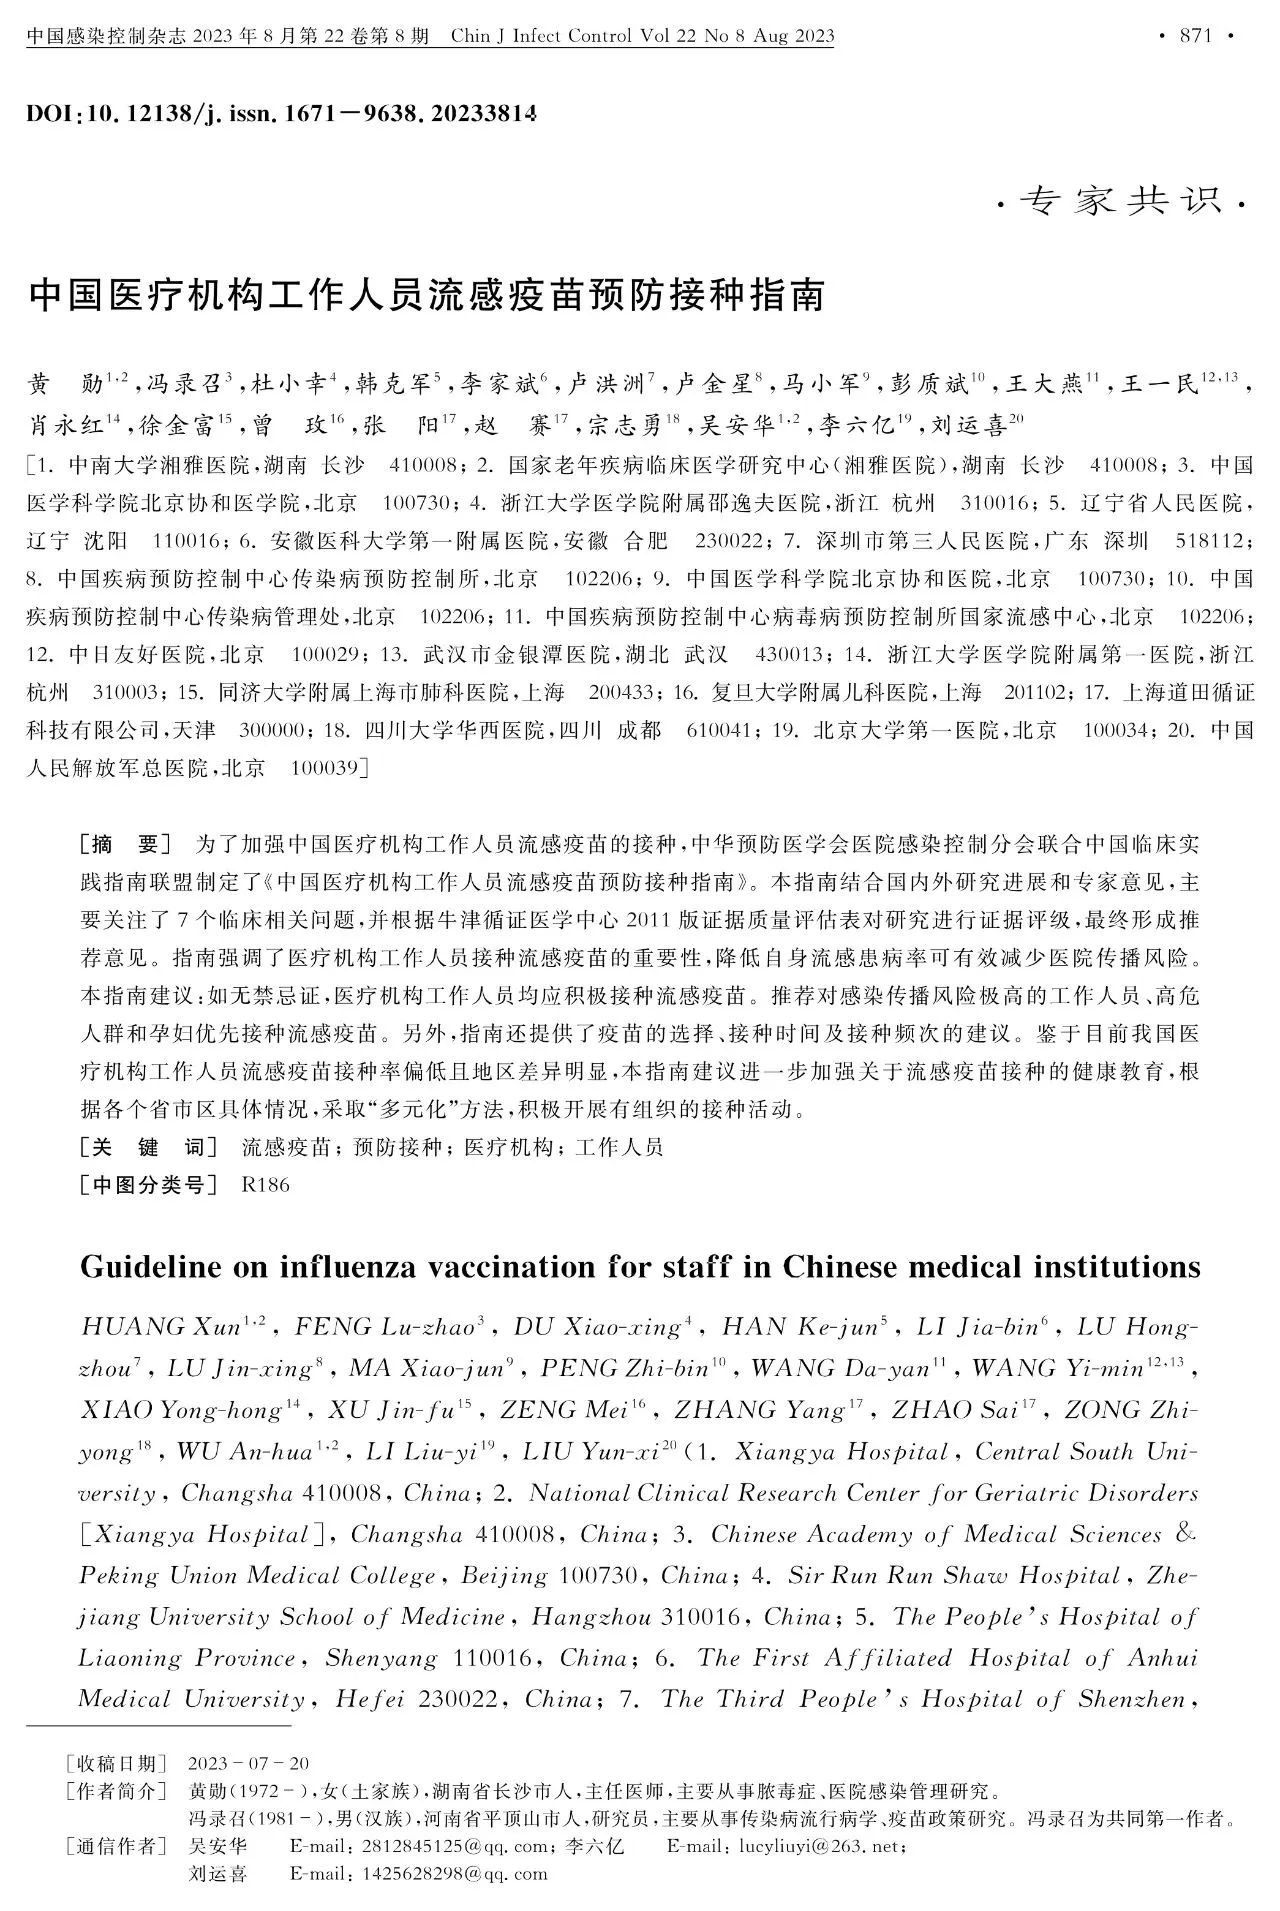 中国医疗机构工作人员流感疫苗预防接种指南